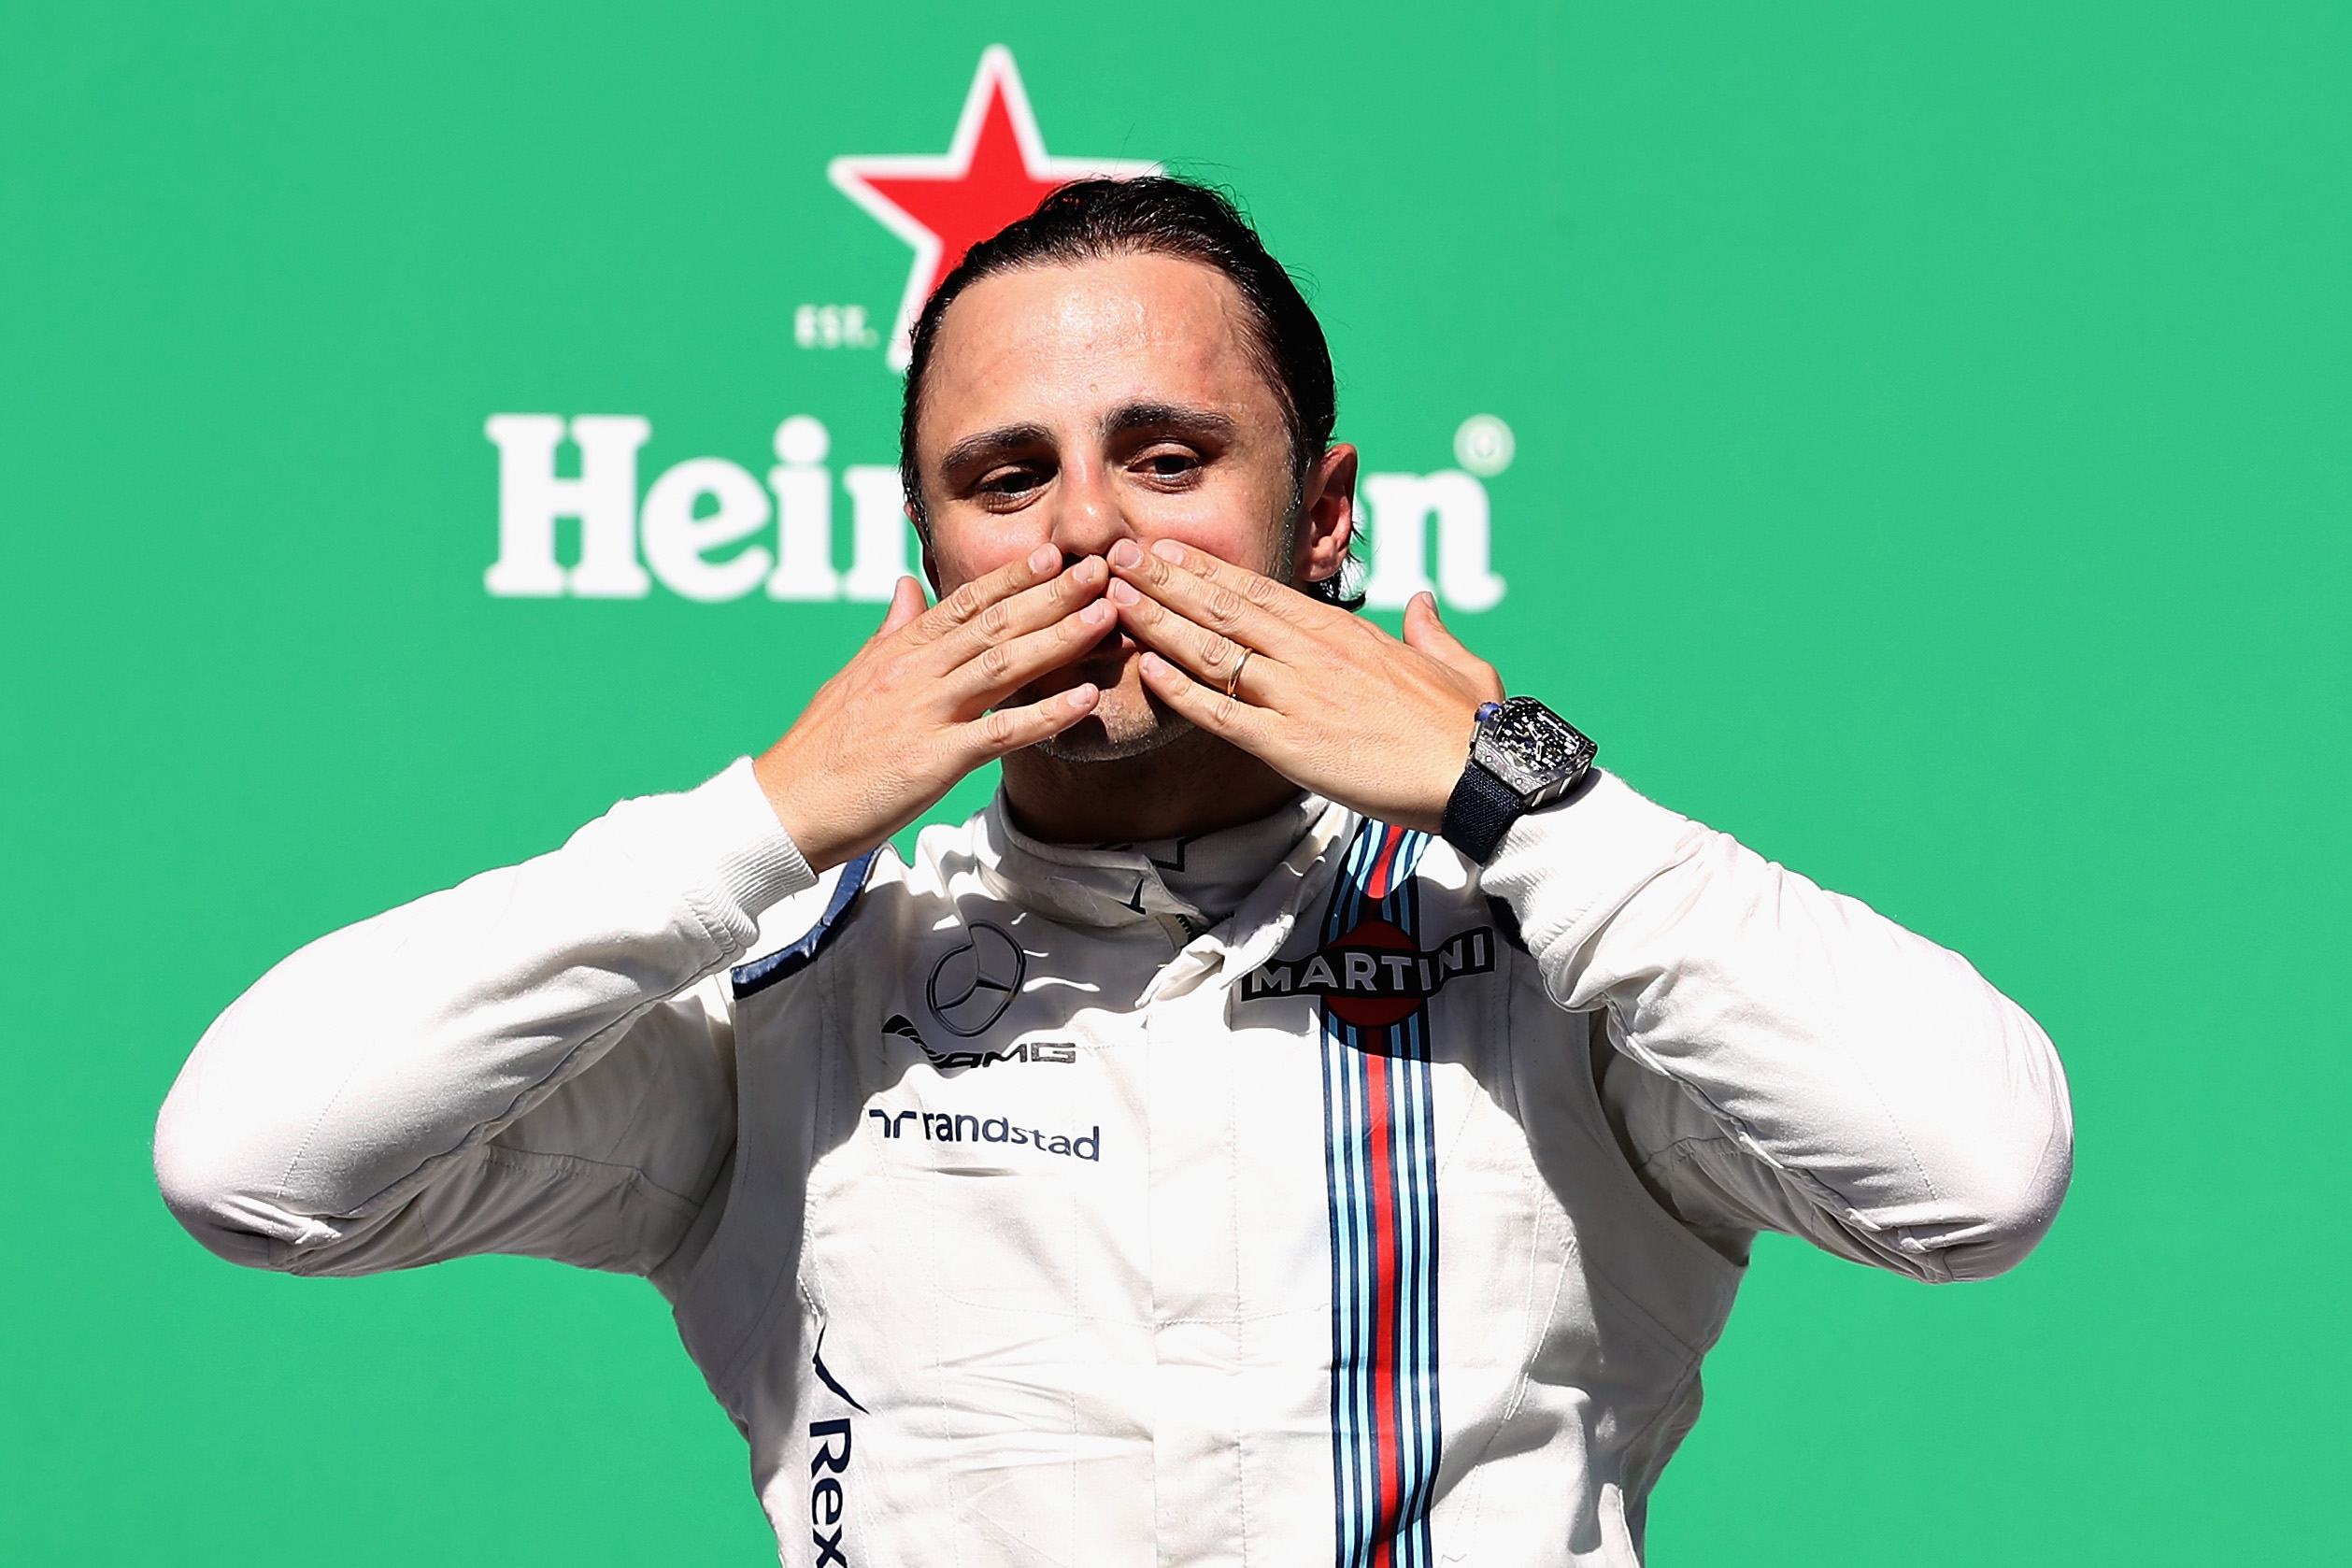 Felipe Massas perfekter zweiter Abschied